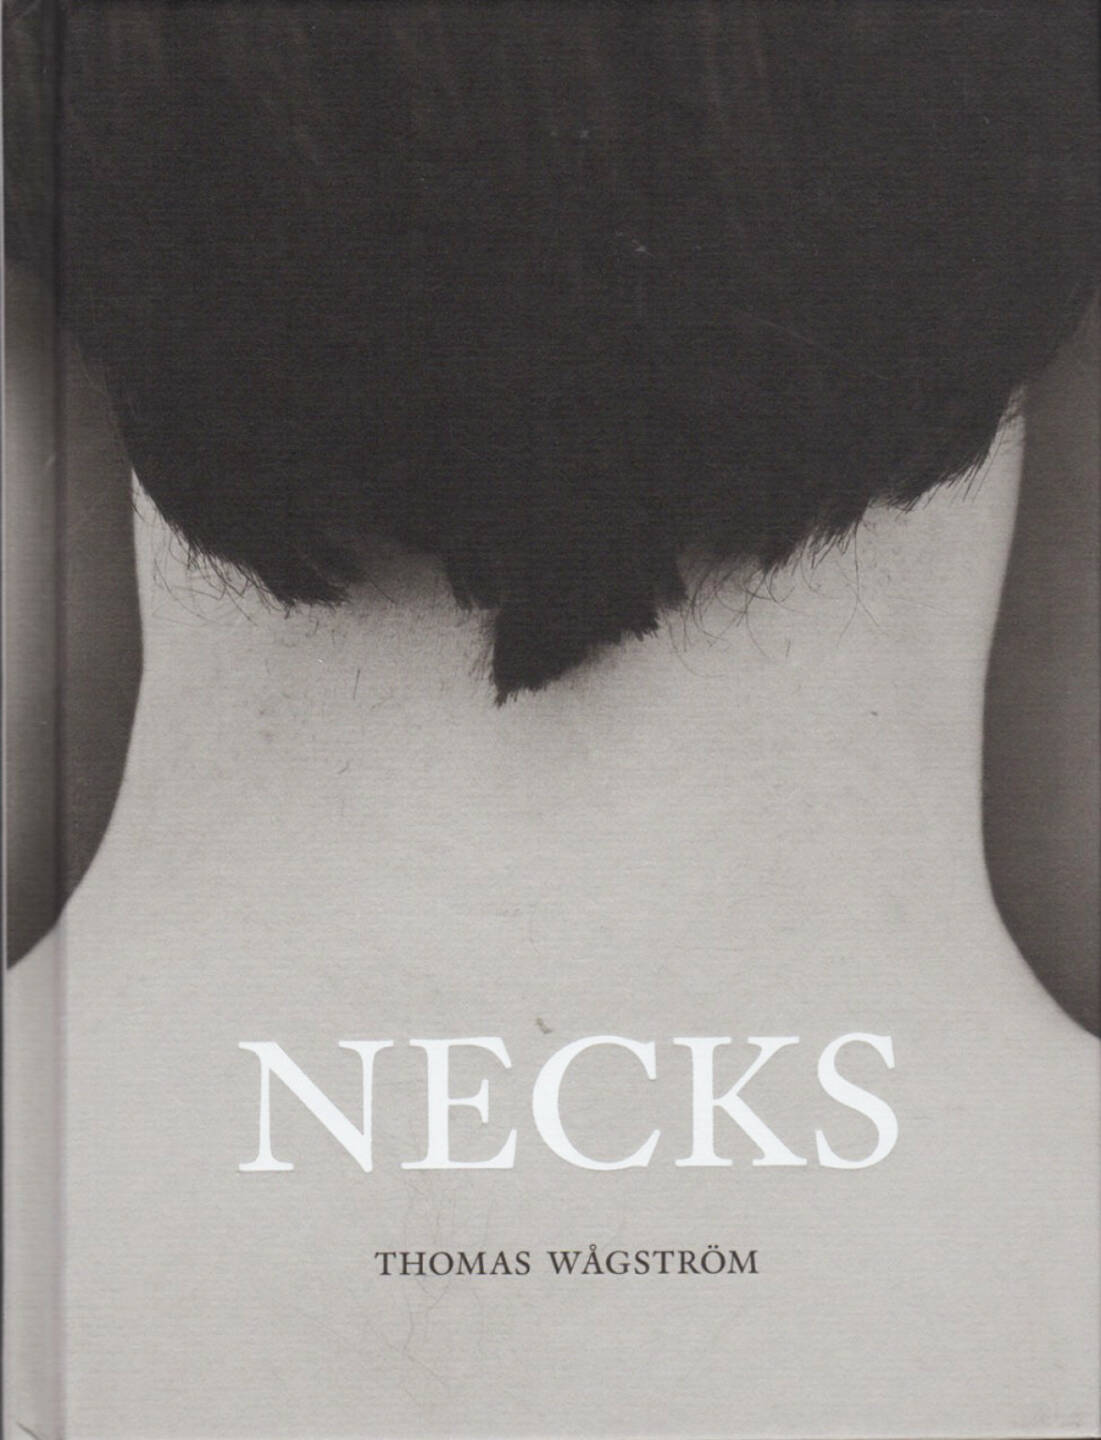 Thomas Wågström - Necks, Max Ström 2014, Cover - http://josefchladek.com/book/thomas_wagstrom_-_necks